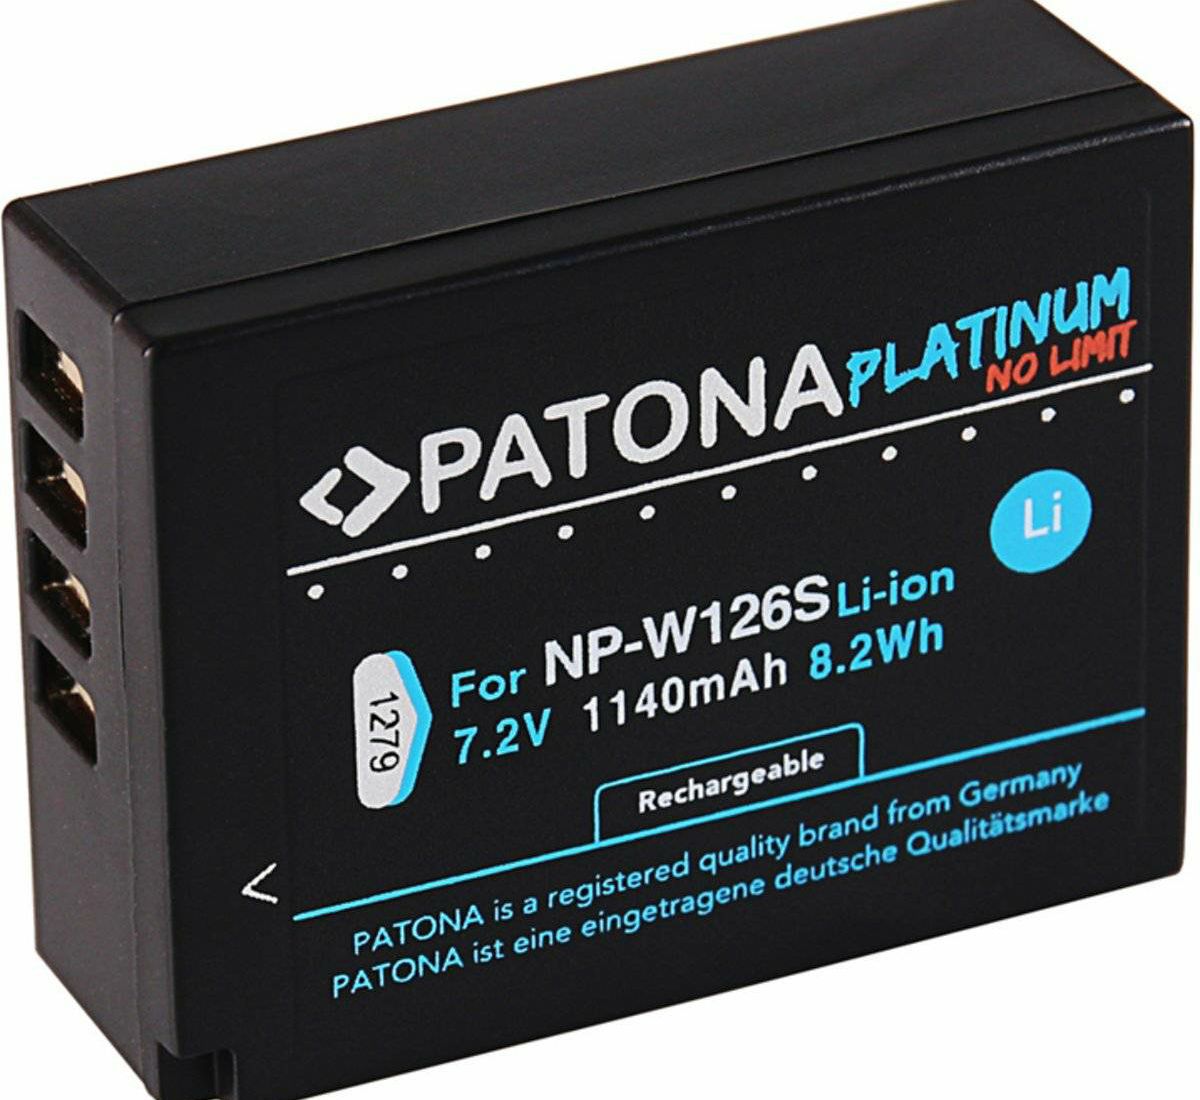 Patona NP-W126S Platinum 1140mAh 8.2Wh 7.2V baterija za Fujifilm NP-W126 za Fuji X-T30, X-T20, X-T10, X-T3, X-T2, X-T1, X-T100, X-A5, X-A3, X-A2, X-A1, X-A10, X-E3, X-E2S, X-E2, X-E1, X-M1, X-Pro2